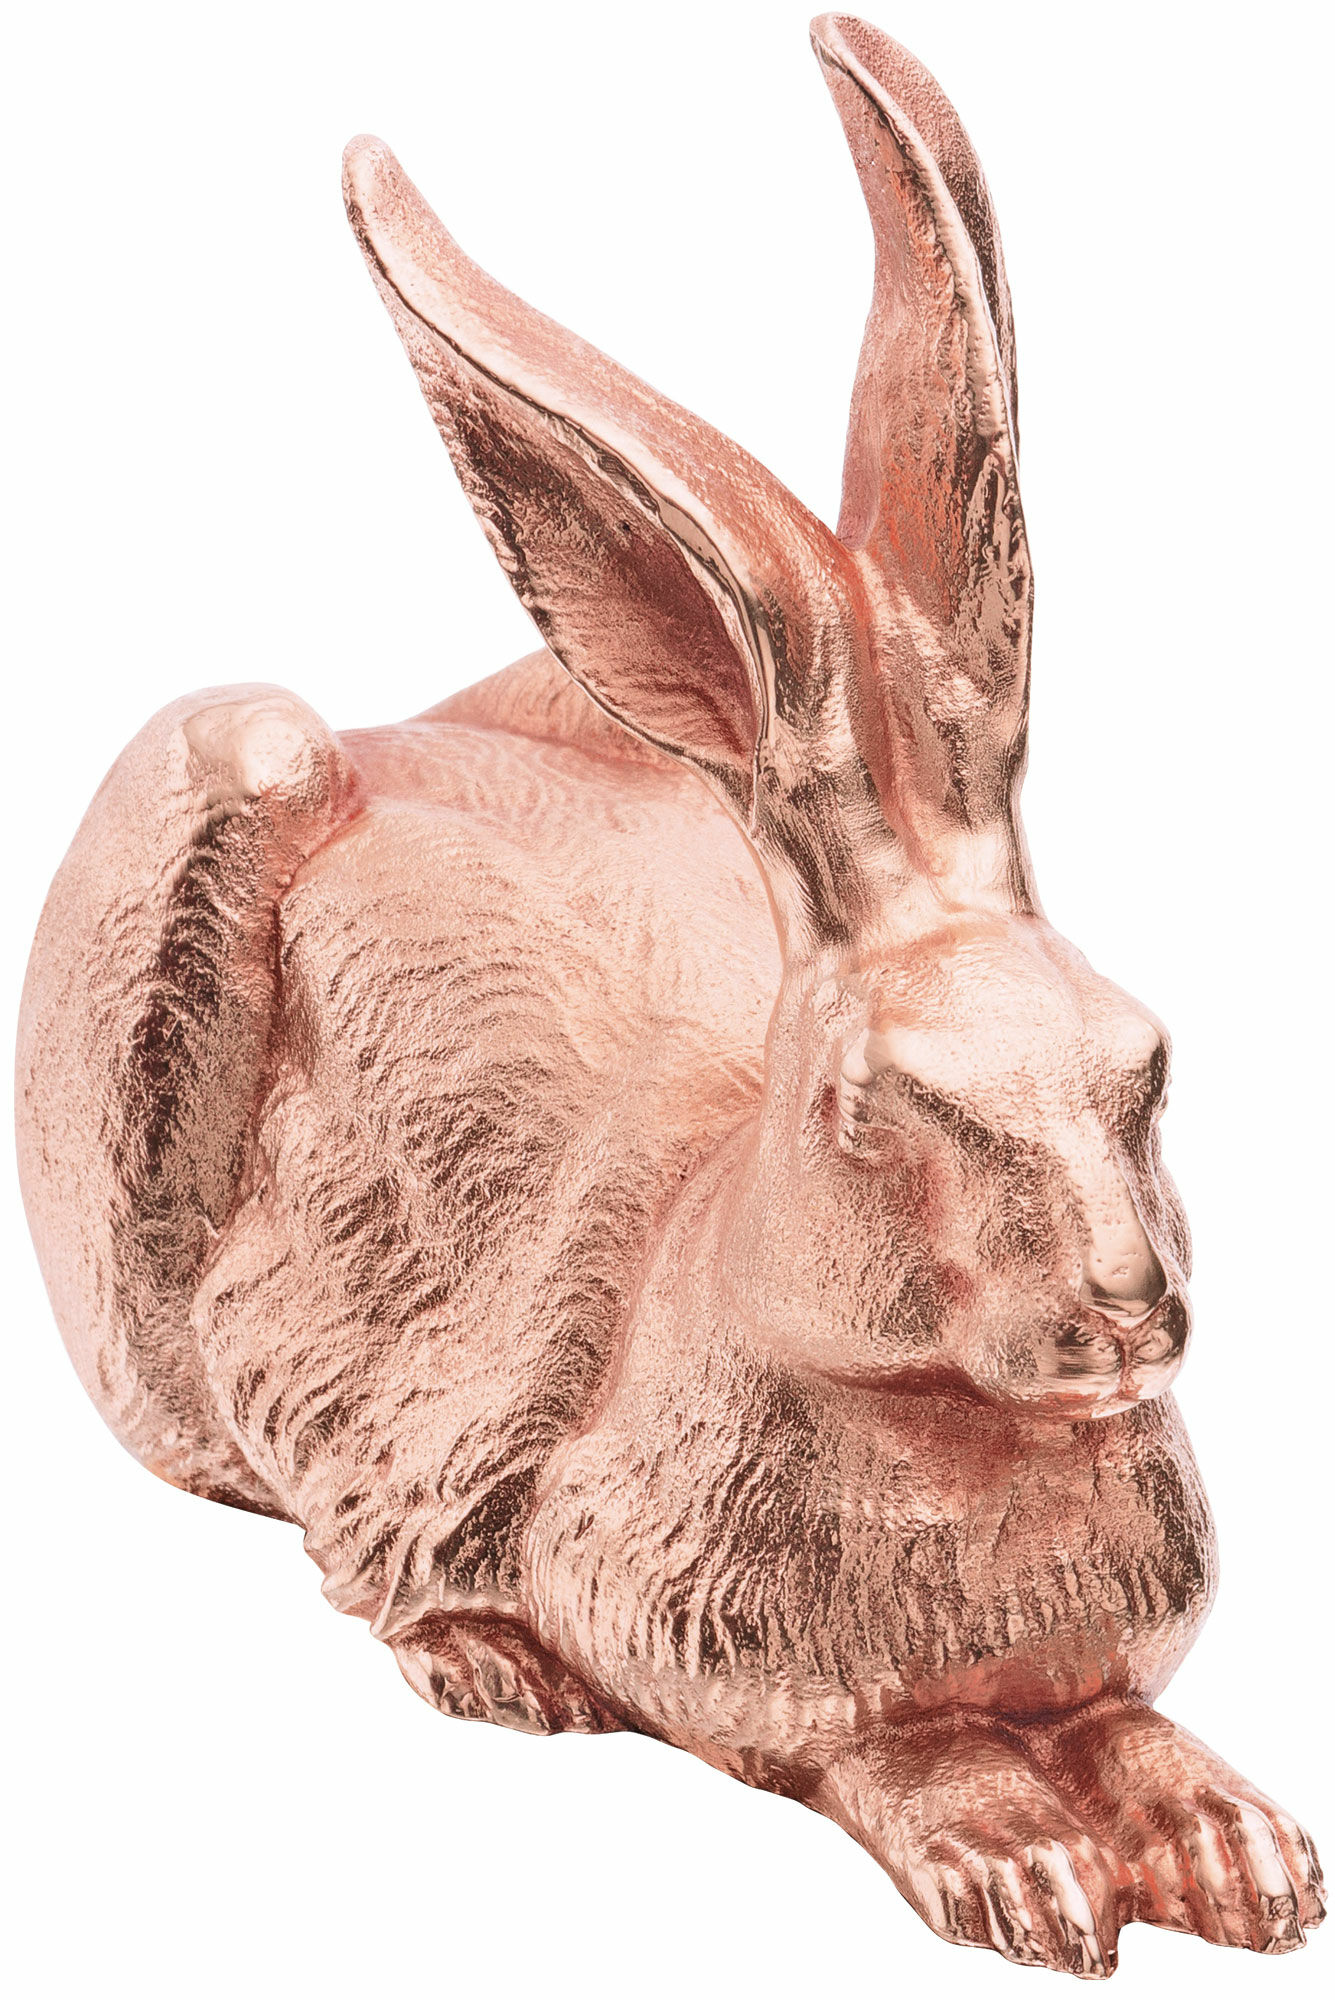 Skulptur "Dürer Hare" (2012), version i rosaguldbelagt tin von Ottmar Hörl